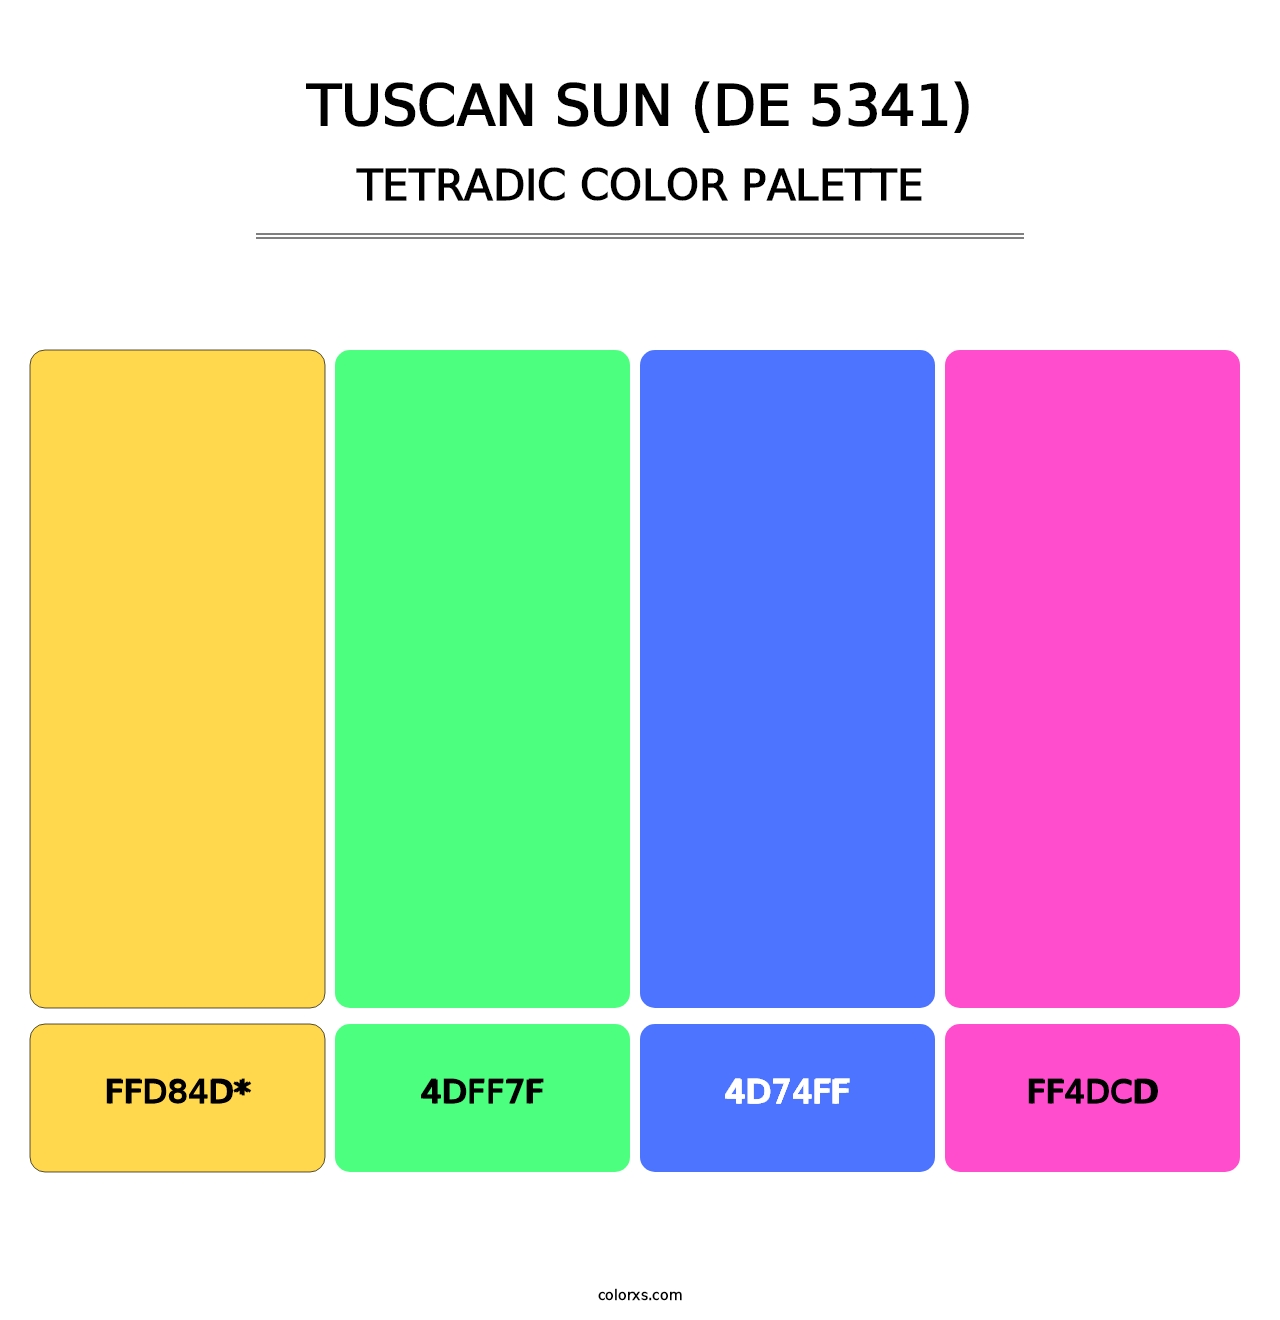 Tuscan Sun (DE 5341) - Tetradic Color Palette